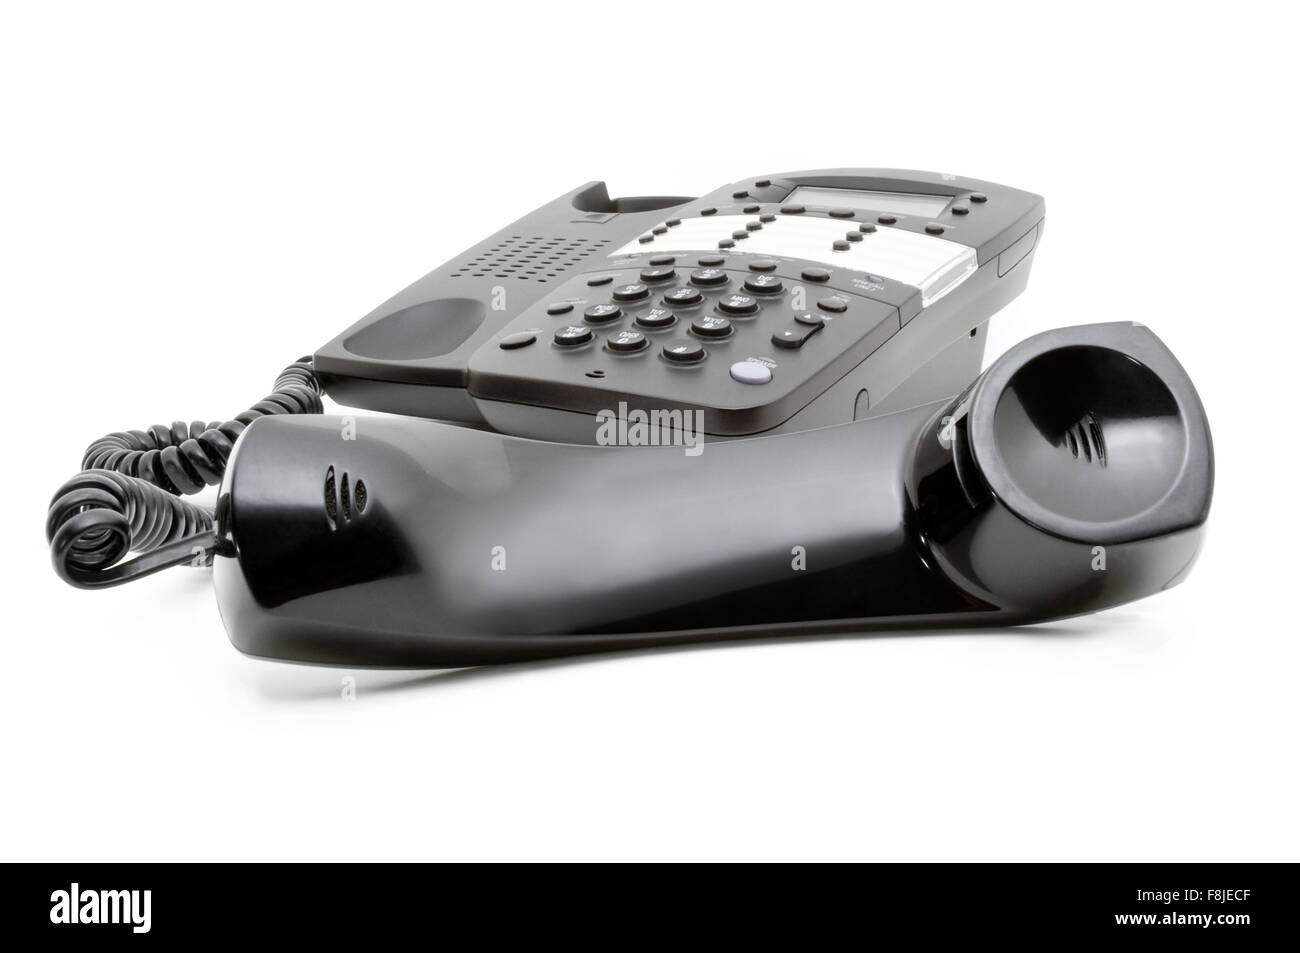 Black business phone avec le récepteur off the hook cut out isolé sur un fond blanc avec personne Banque D'Images